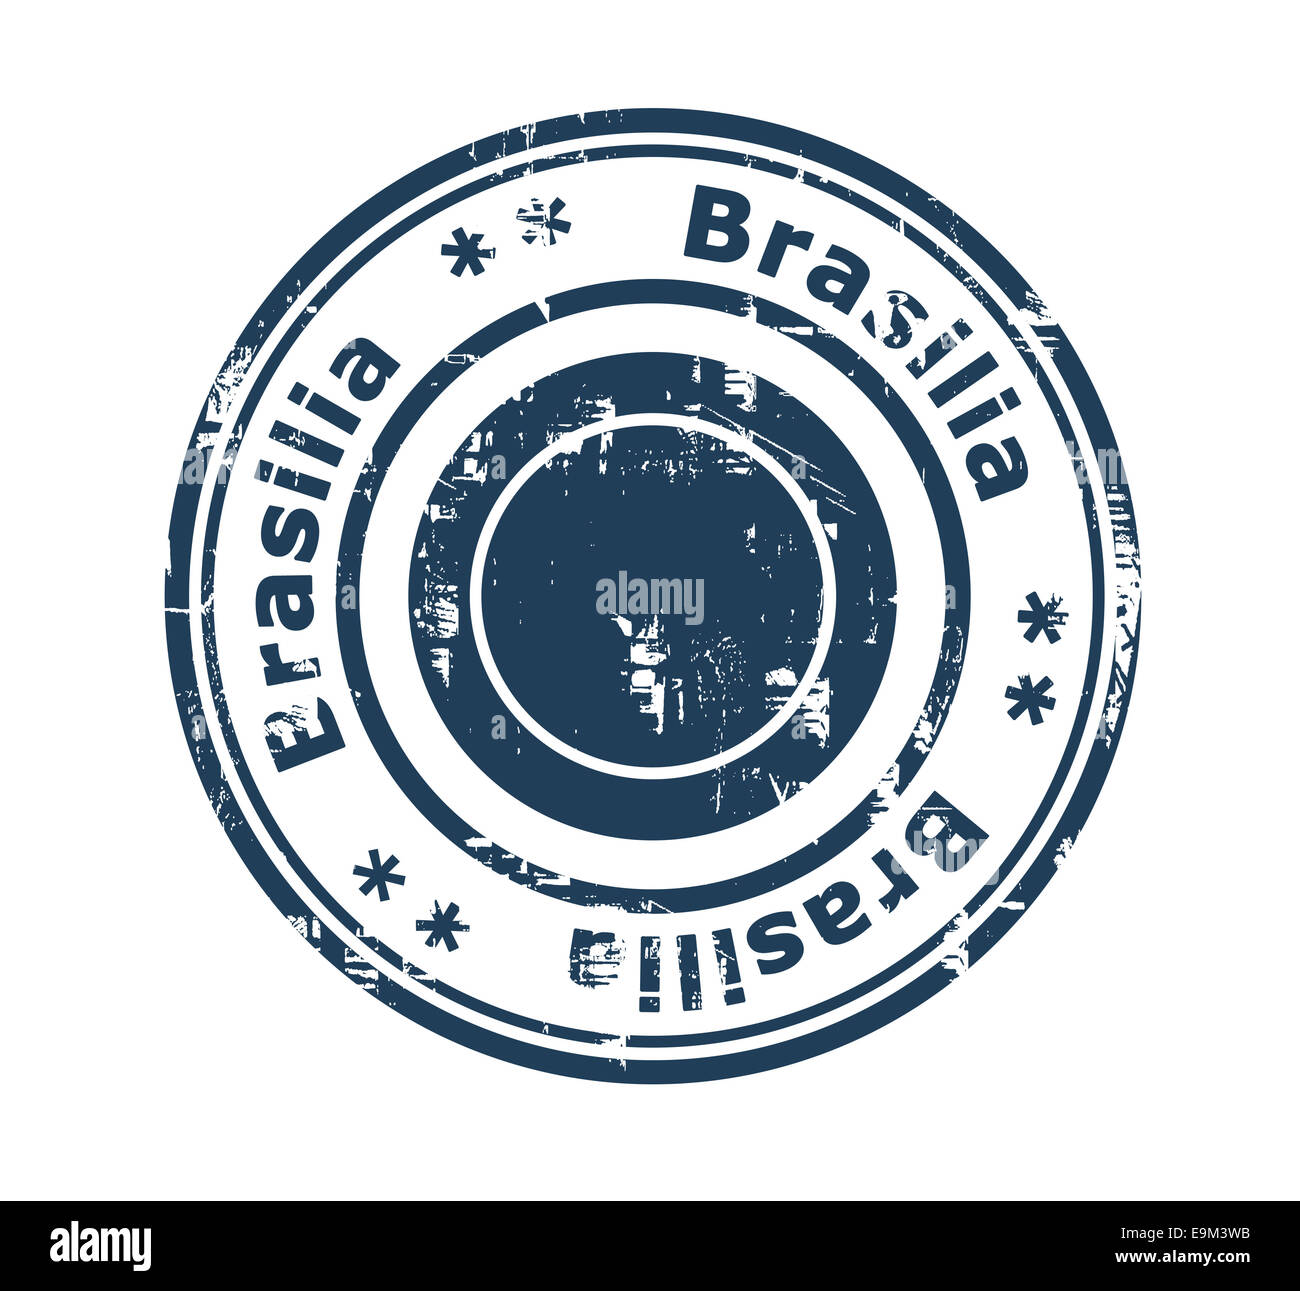 Grunge-Stempel der Stadt Brasilia in Brasilien isoliert auf einem weißen Hintergrund. Stockfoto